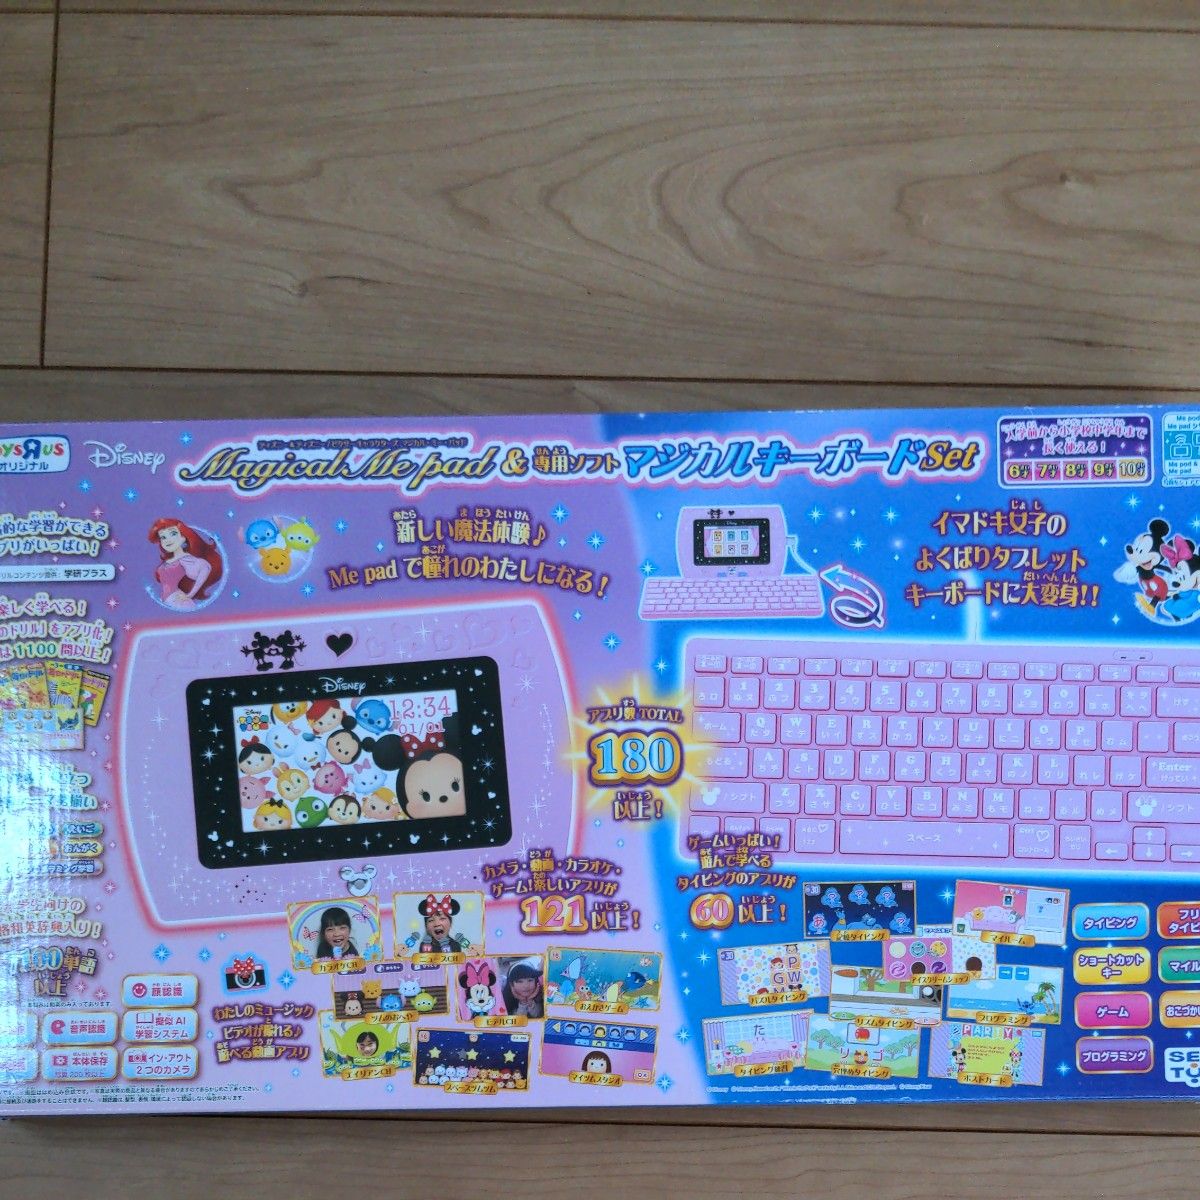 ディズニー ピクサーキャラクターズ マジカルミーパッド & 専用ソフト マジカルキーボードセット